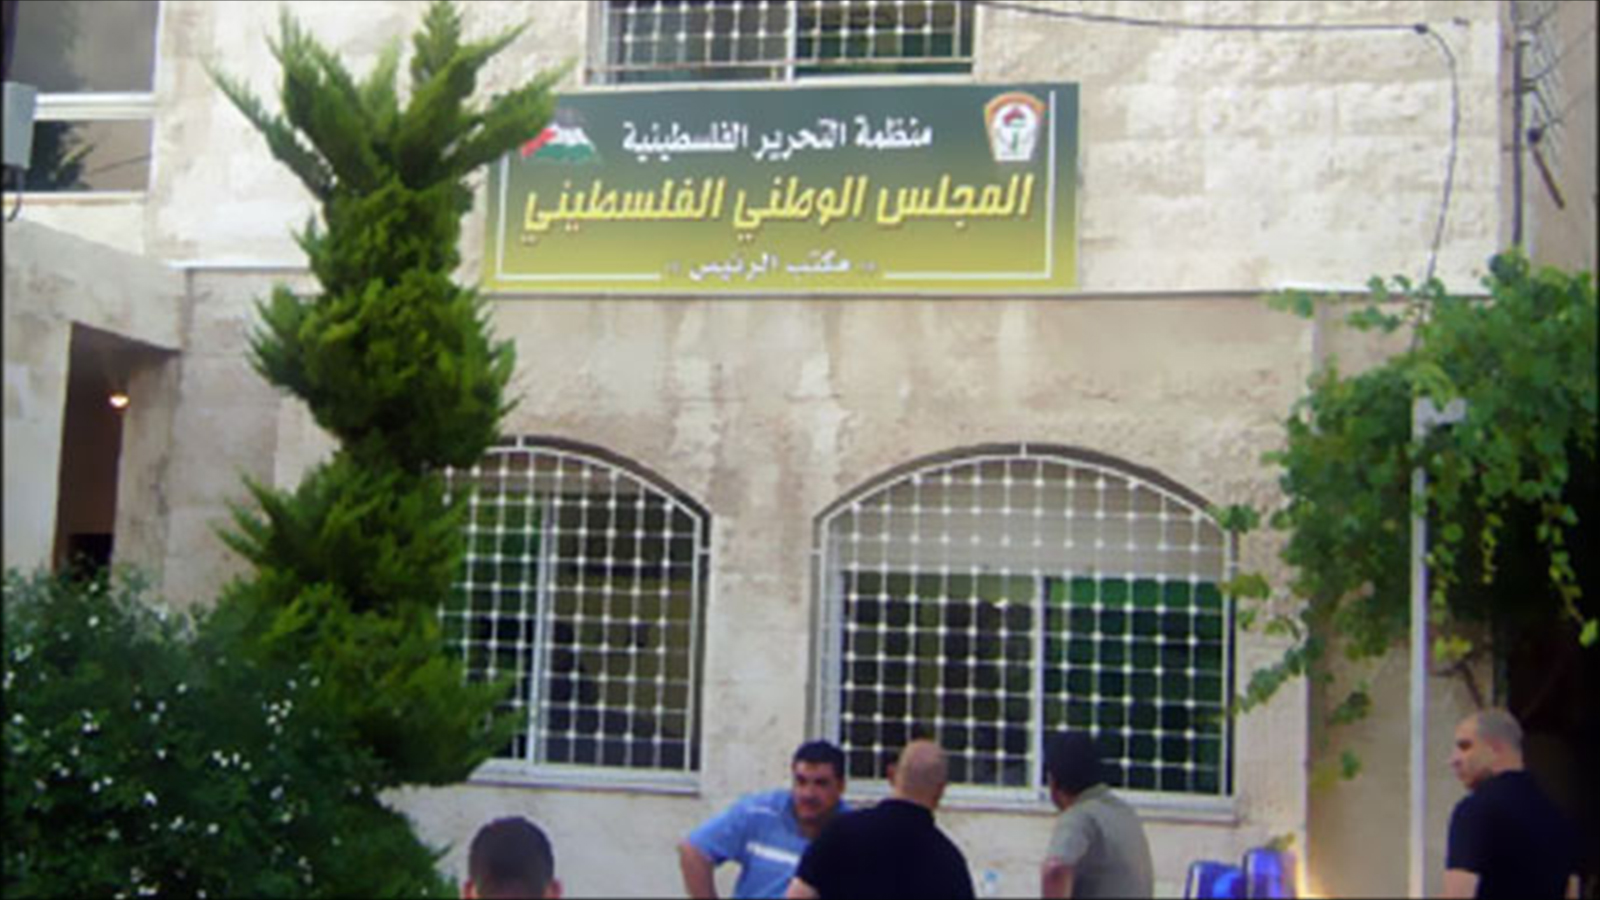 المجلس الوطني أكد أن الإدارة الأميركية اختارت العزلة والابتعاد عن السلام لصالح الاحتلال (الجزيرة)